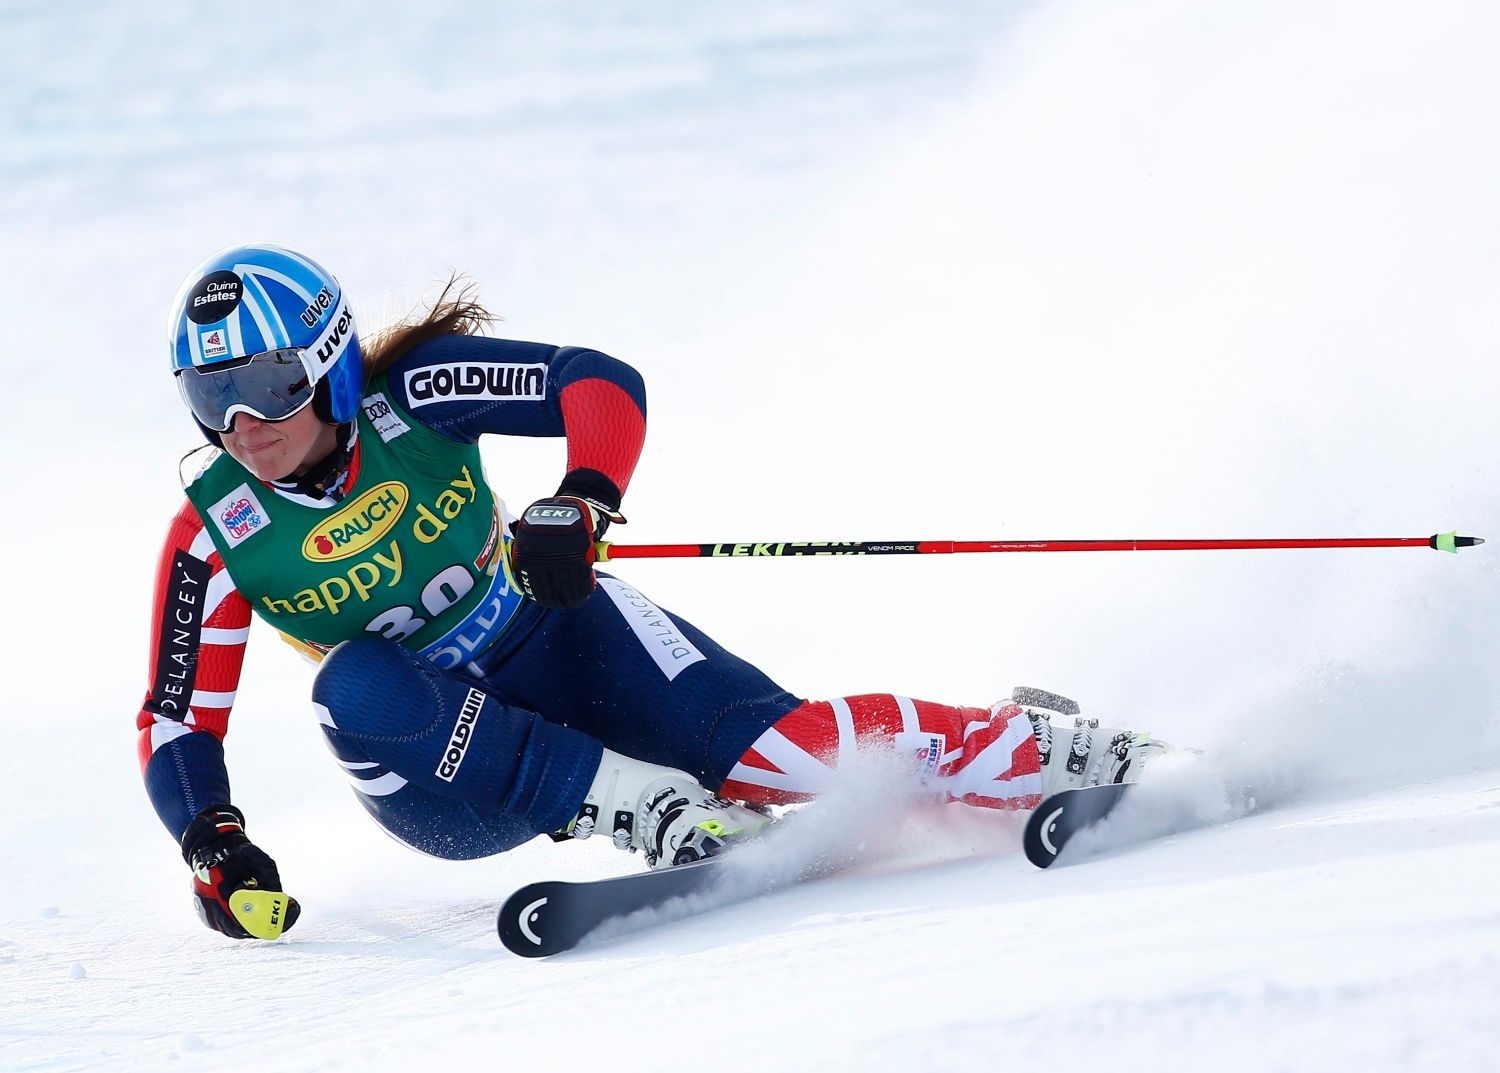 SP 2017-18, obří slalom Ž (Sölden): Alex Tilleyová